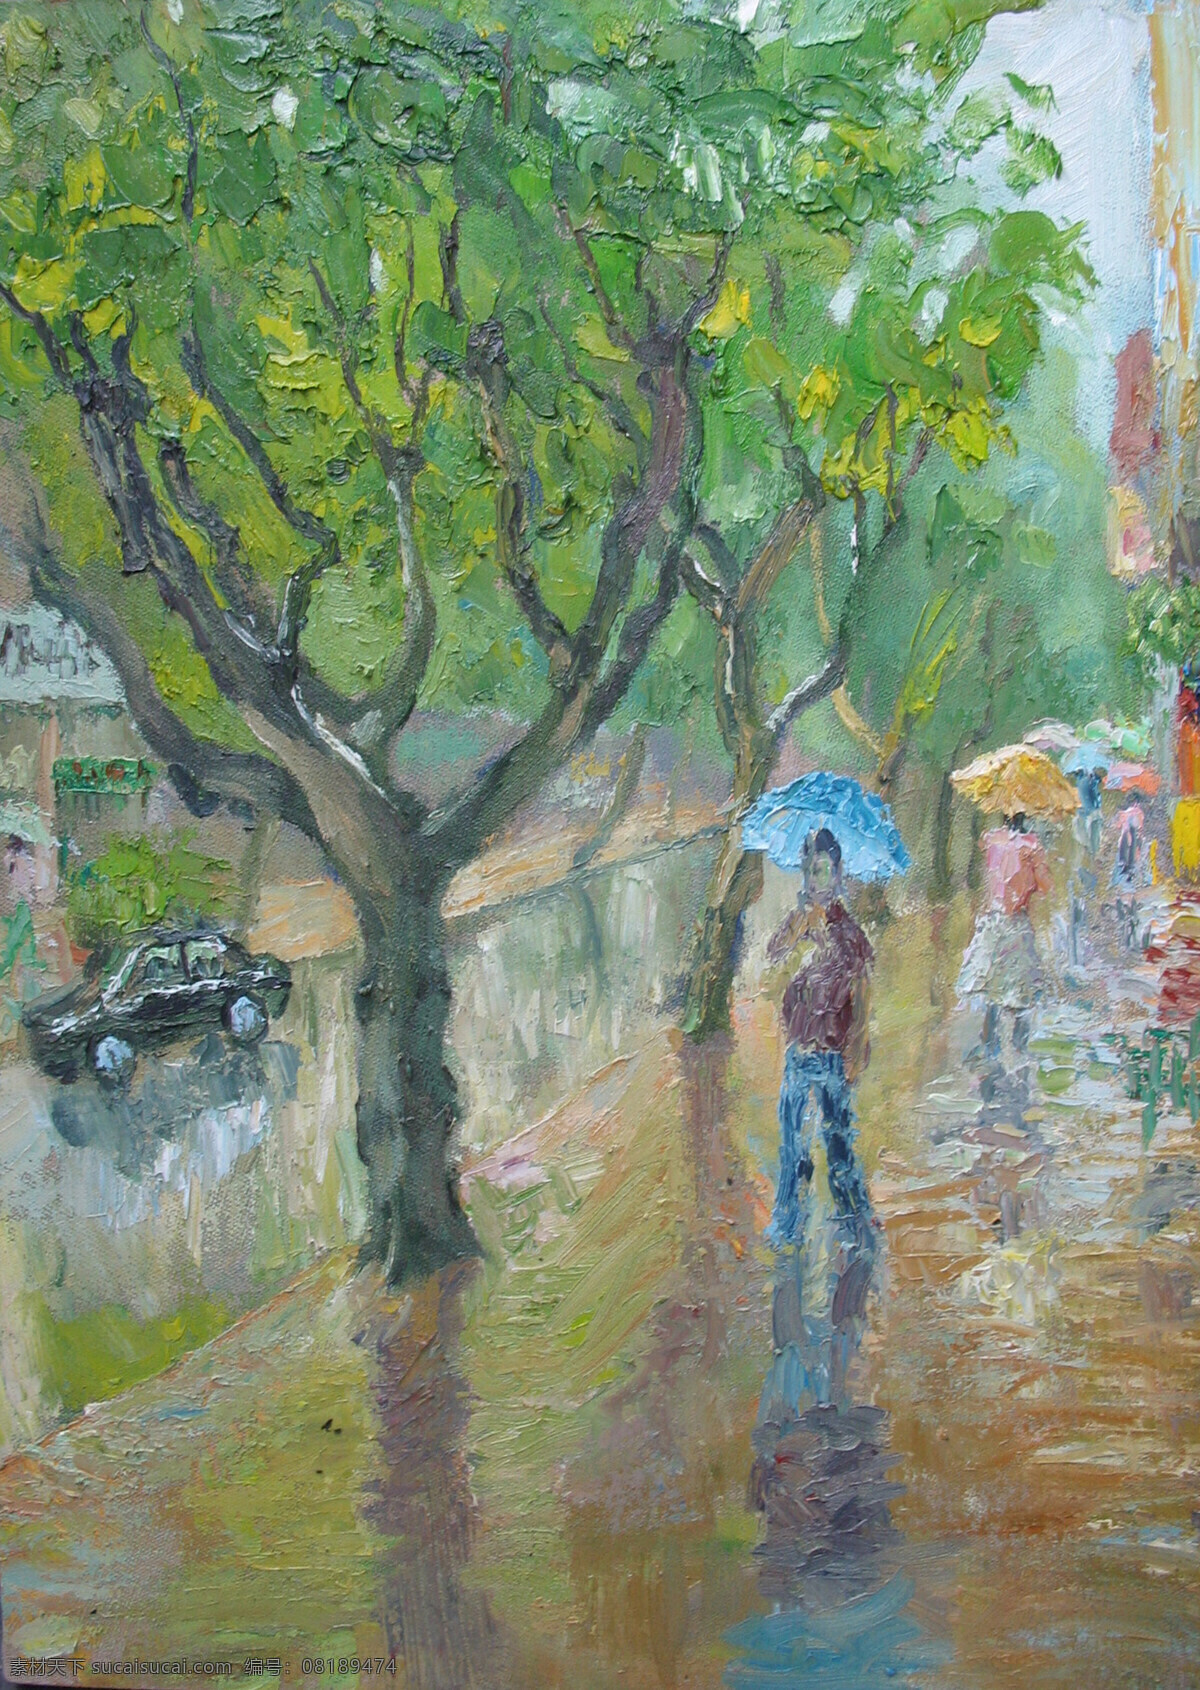 街景油画 街景 大树 雨景 撑伞 绘画书法 文化艺术